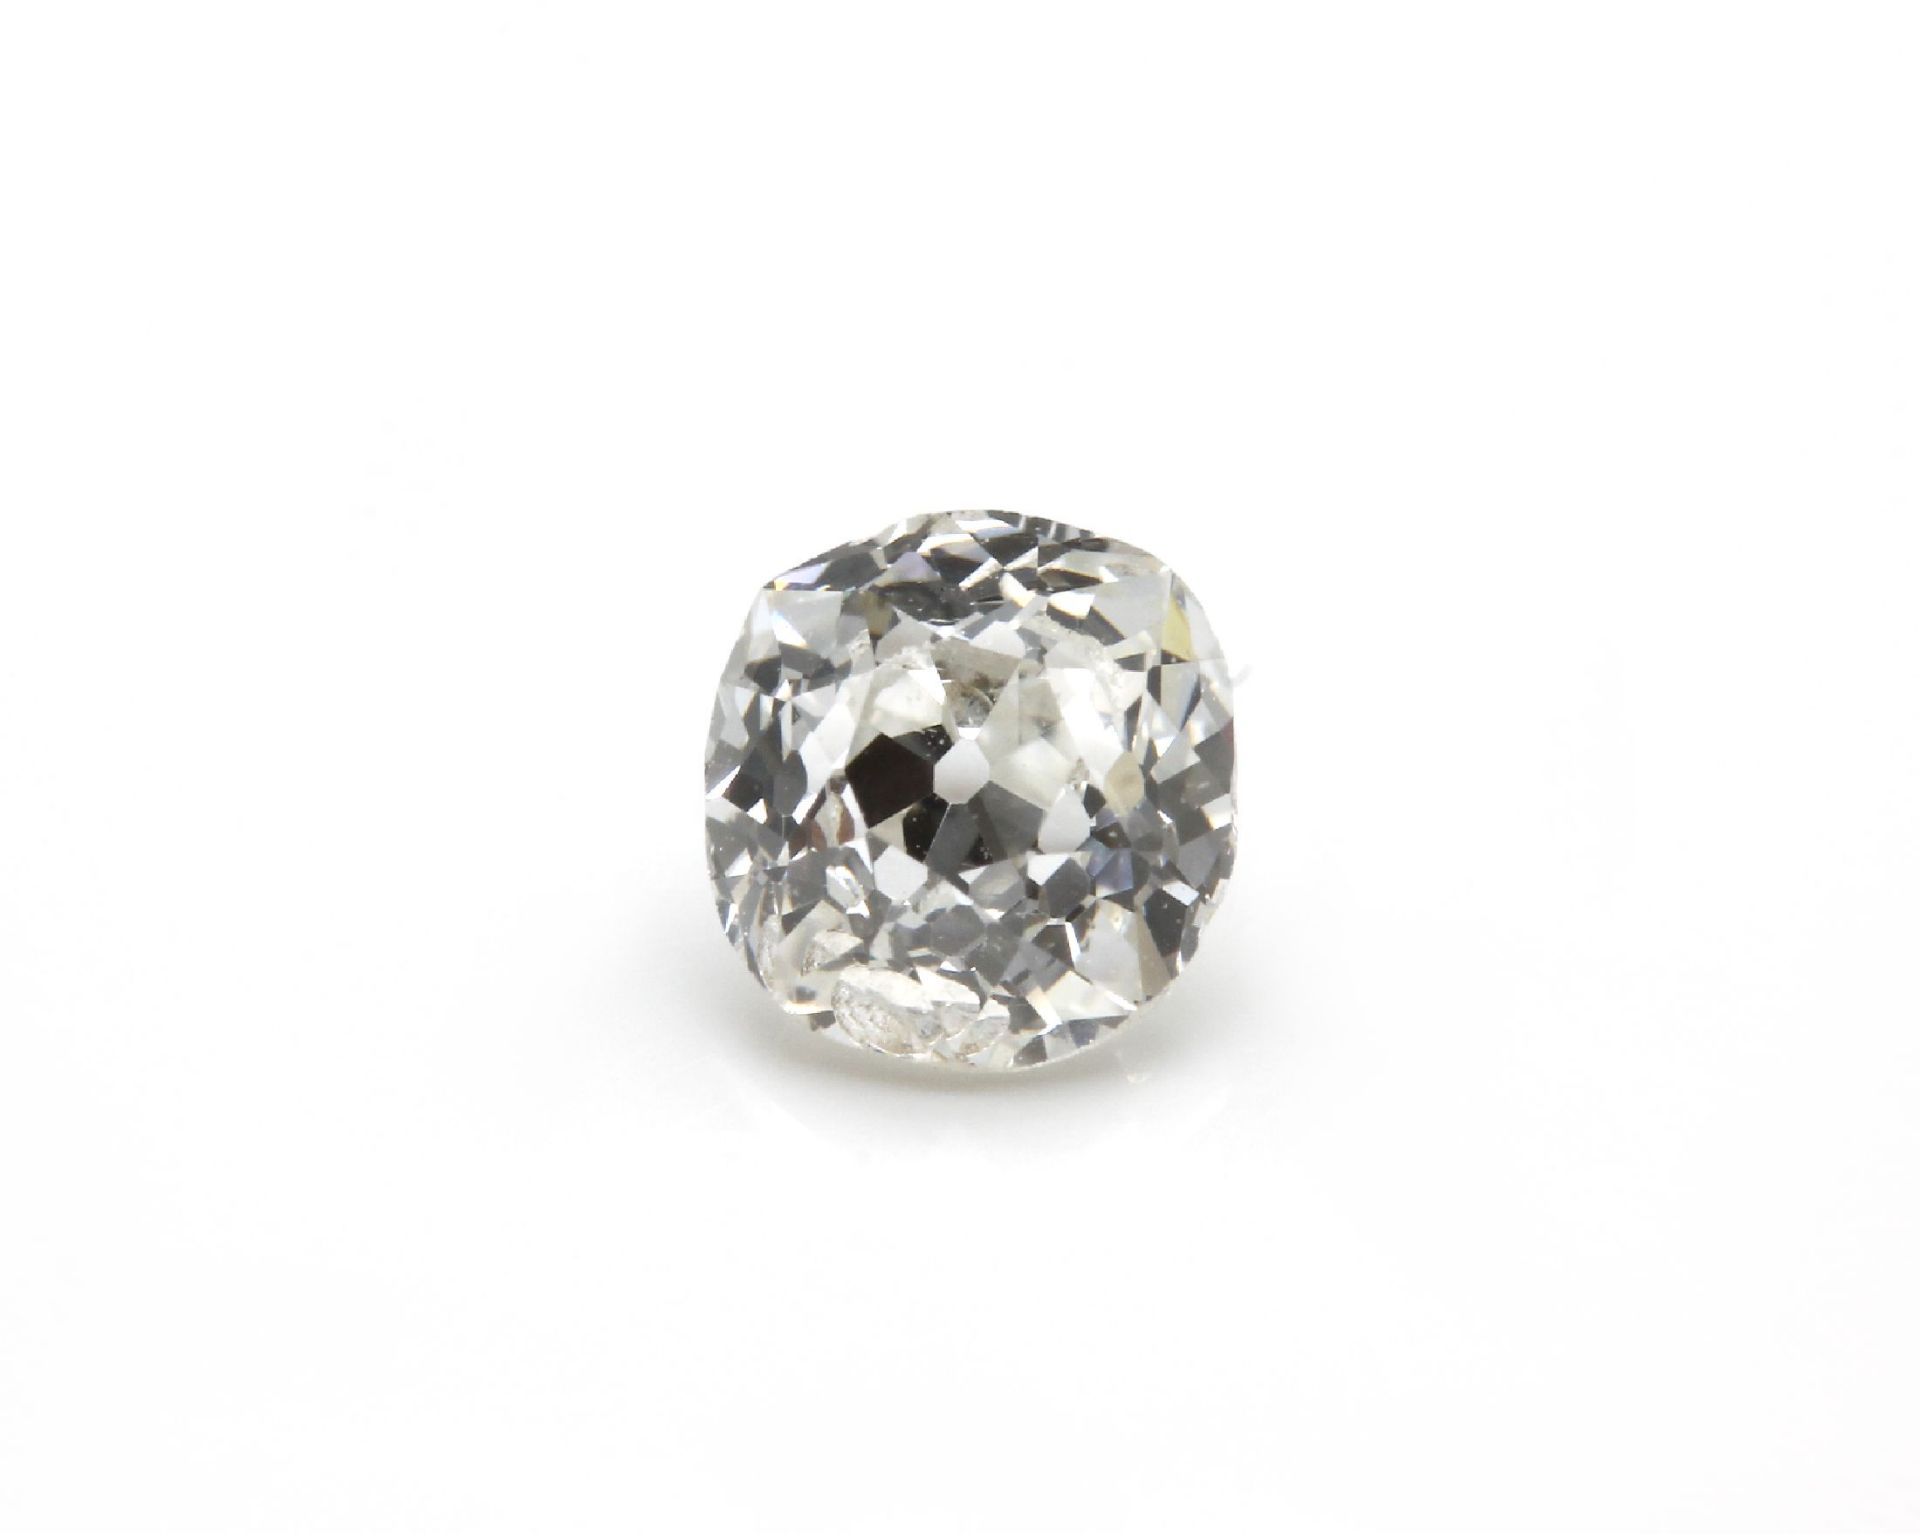 Loser Altschliff-Diamant 0.41 ct Weiß/p 1 Schätzpreis: